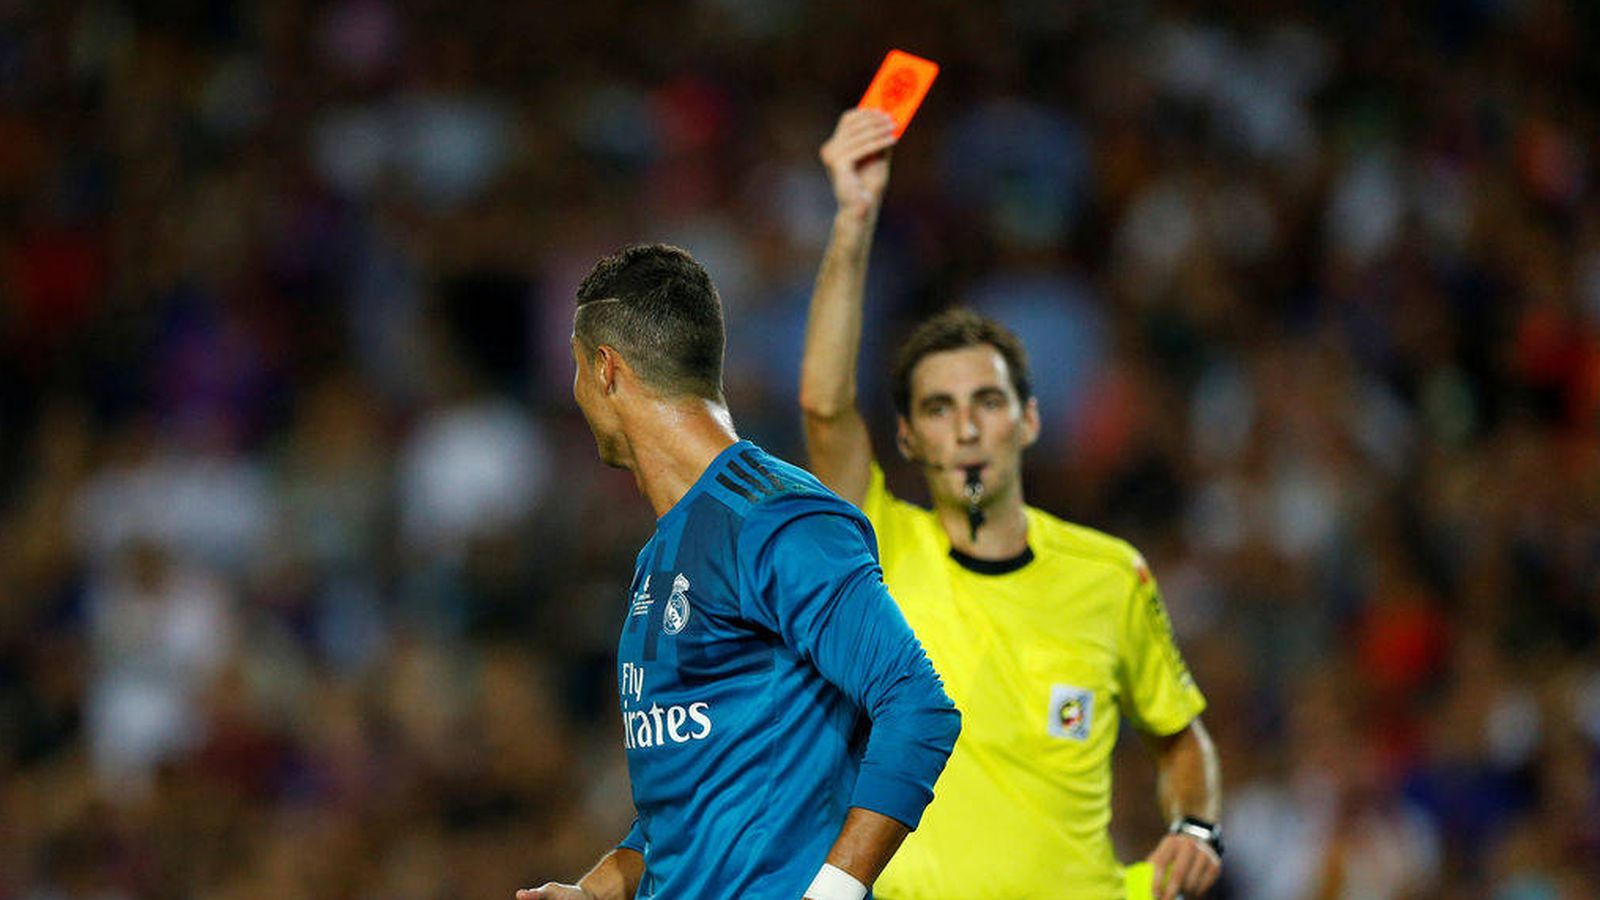 Foto: El árbitro saca la tarjeta roja a Cristiano en el partido de la Supercopa de España. (Mediaset)